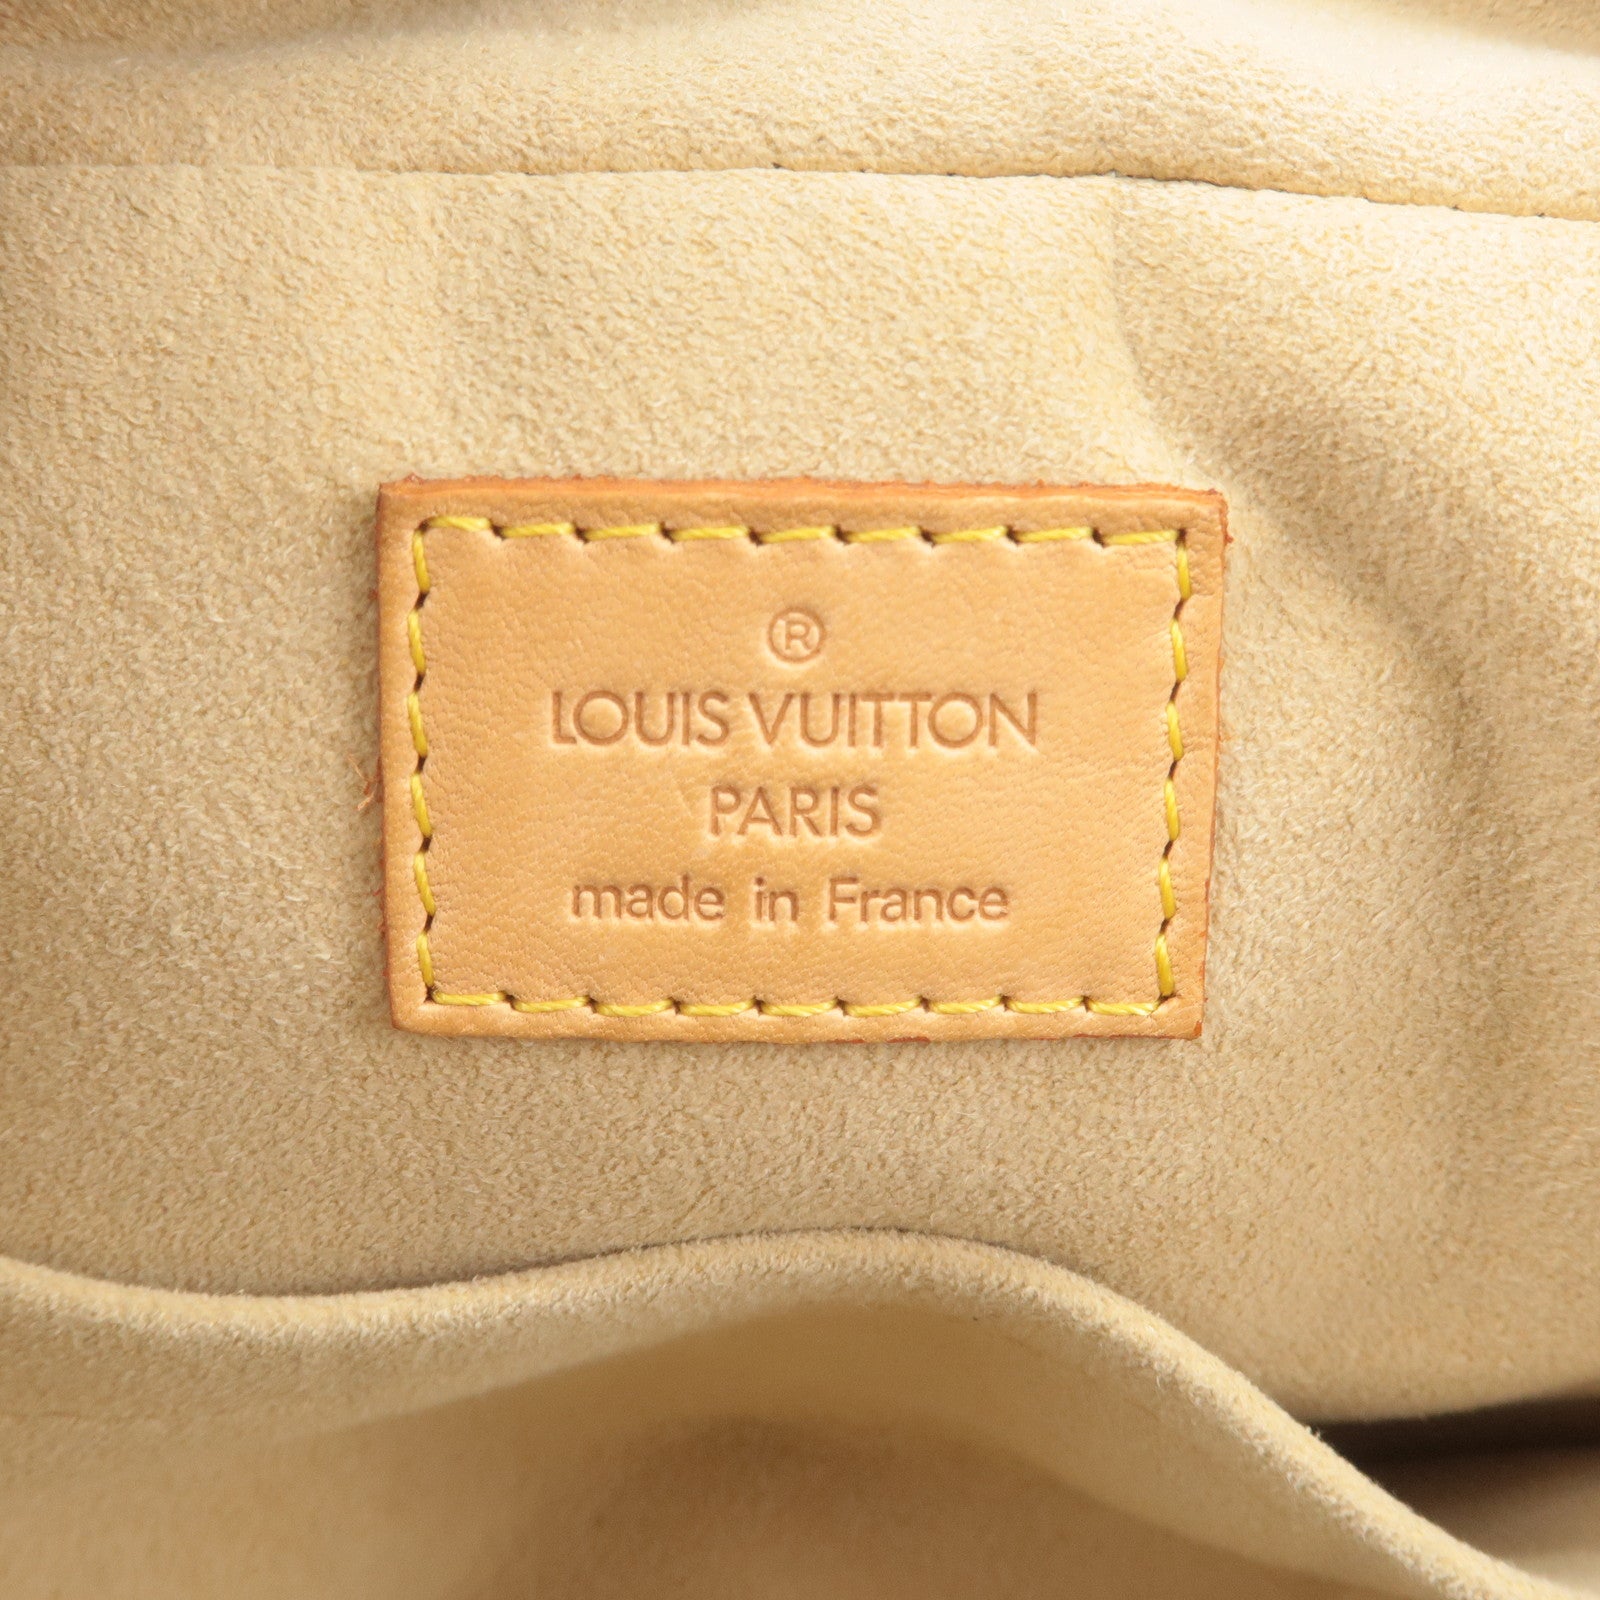 Louis Vuitton M40026 Monogram Manhattan PM Hand Bag - Brown